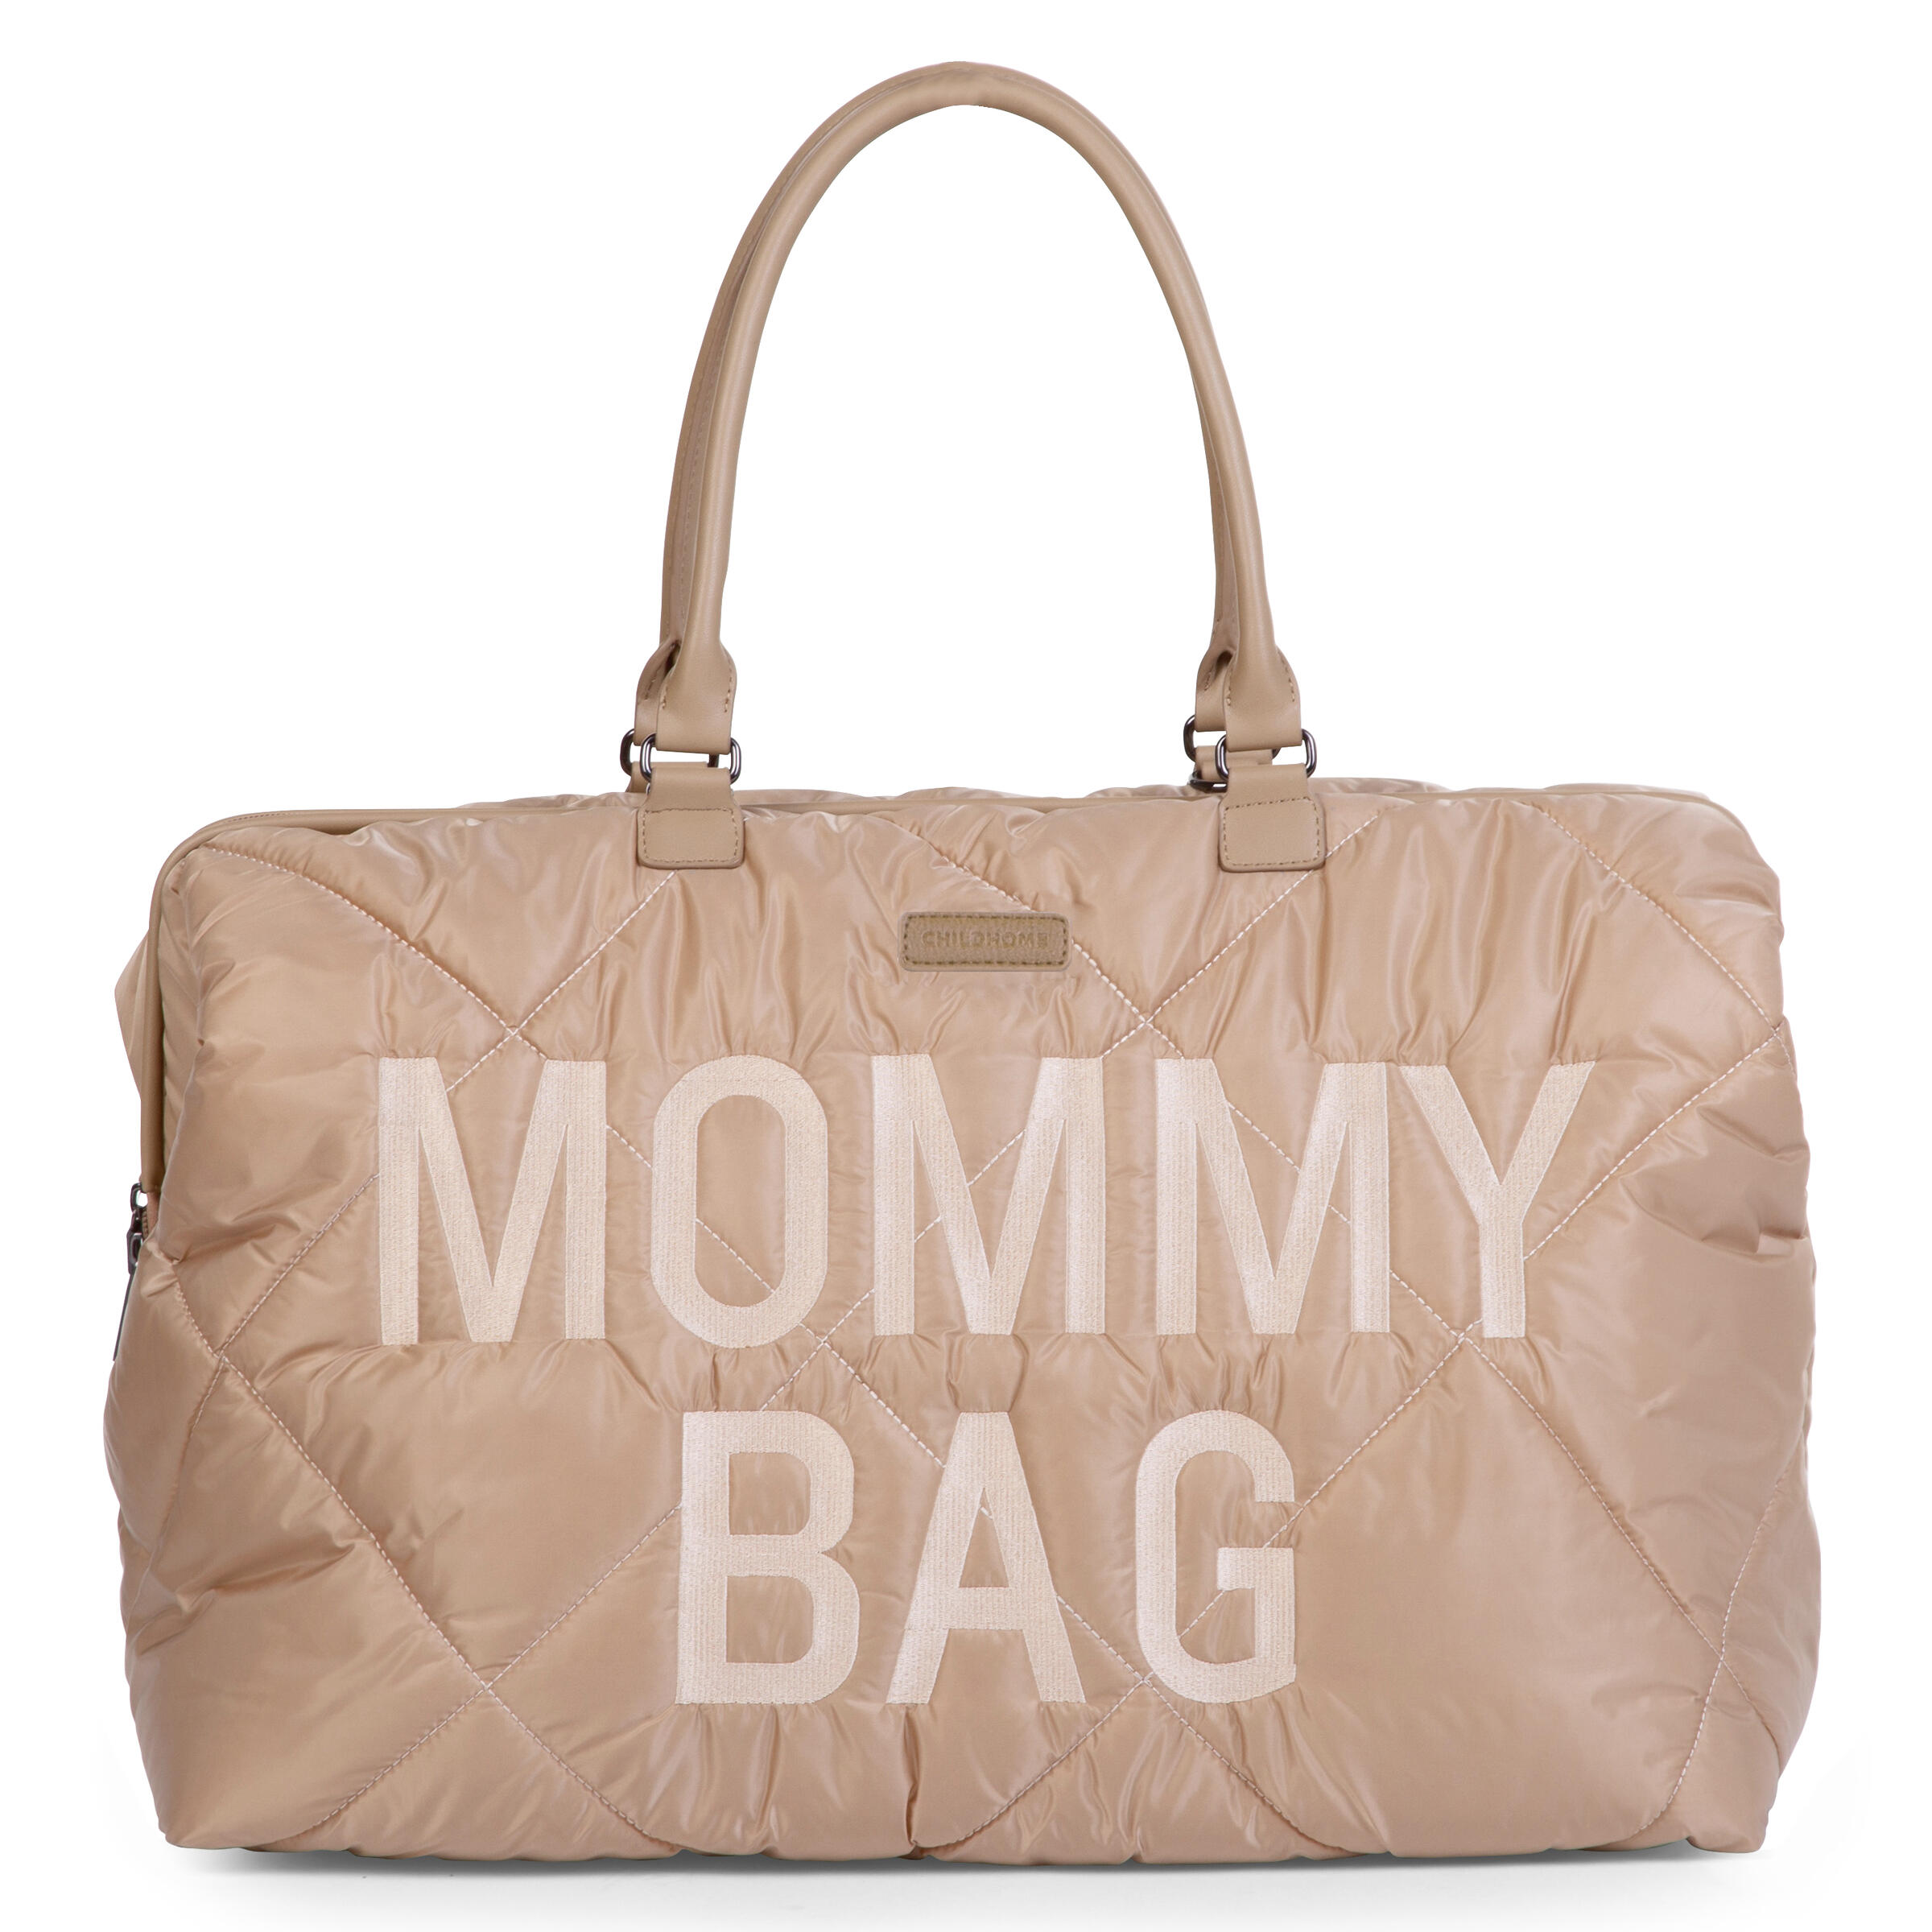 Mommy Bag ® Wickeltasche - Gesteppt - Beige